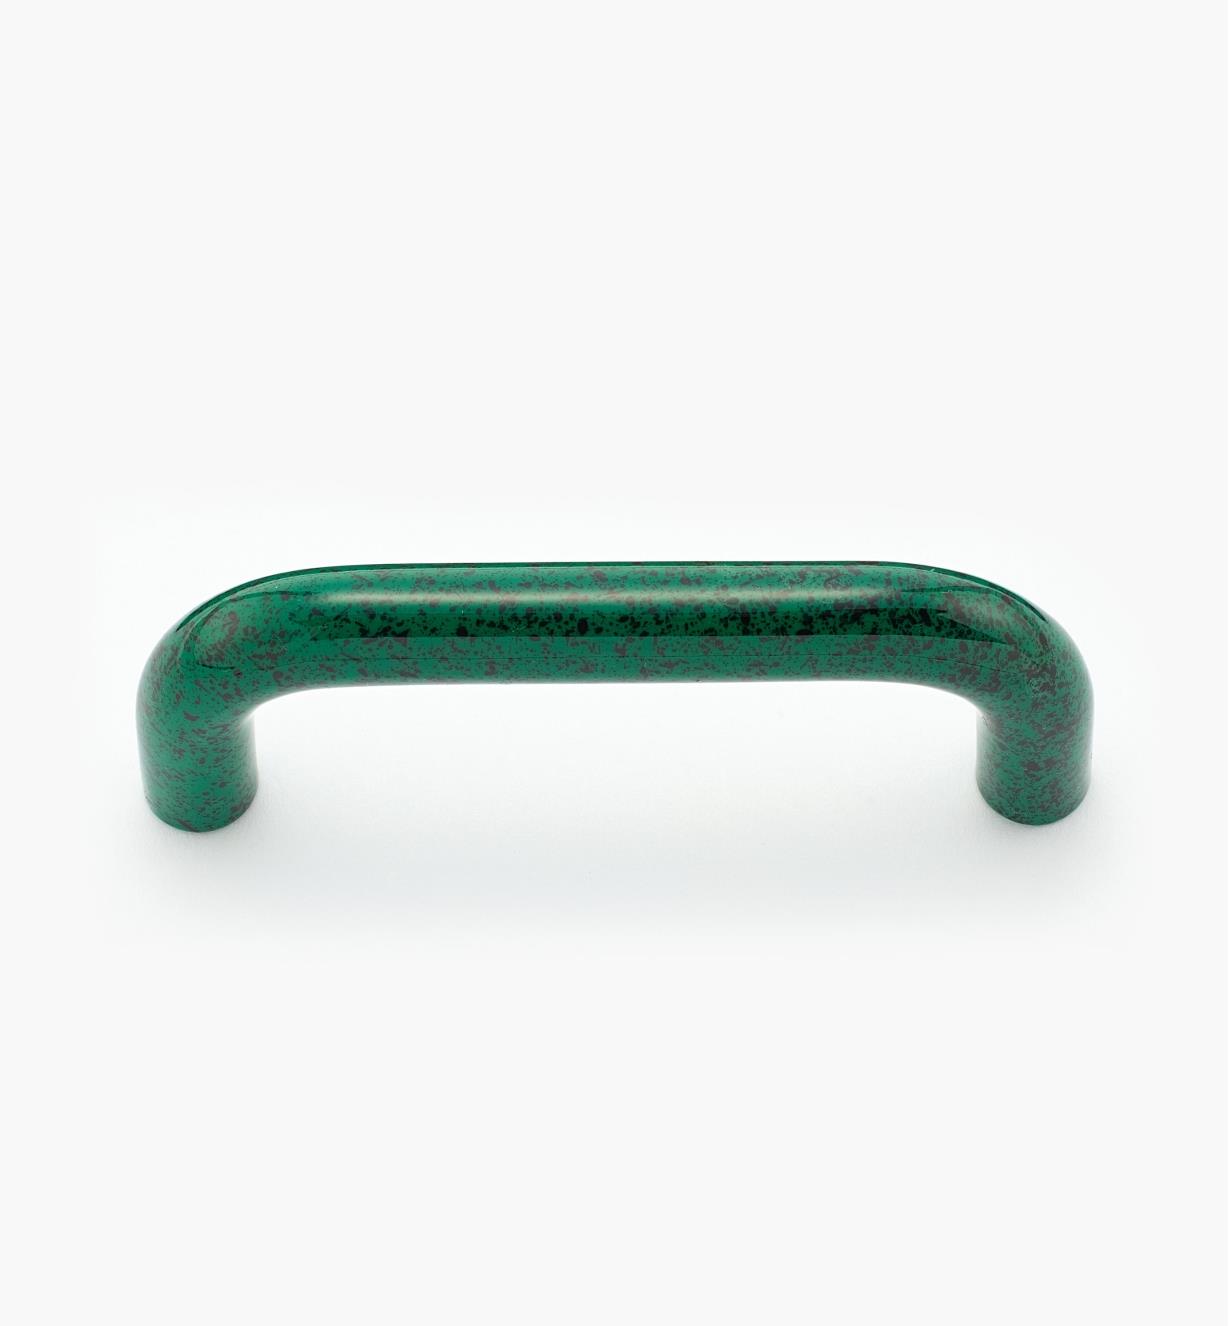 00W3971 - Petite poignée-fil en plastique, vert marbré, 2 7/8 po